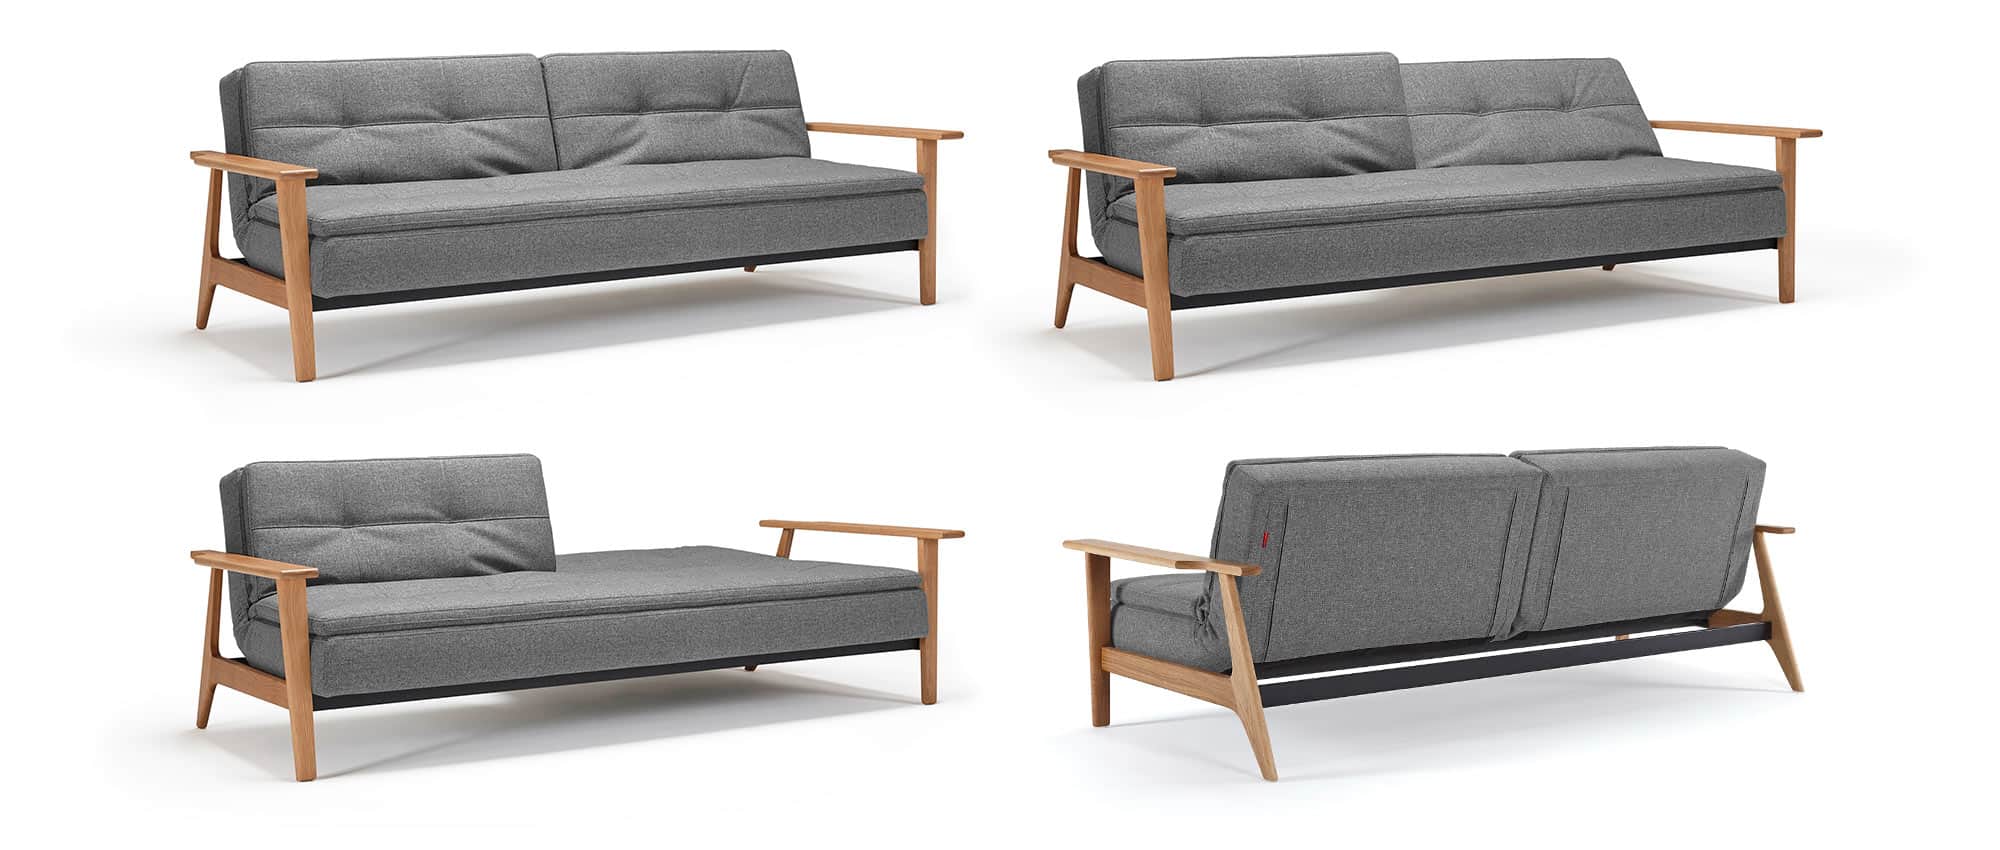 Schlafsofa DUBLEXO von Innovation mit Armlehnen aus Eichenholz FREJ, Gästebett mit verstellbarer Rückenlehne, skandinavisches Design - Liegefläche 110x200